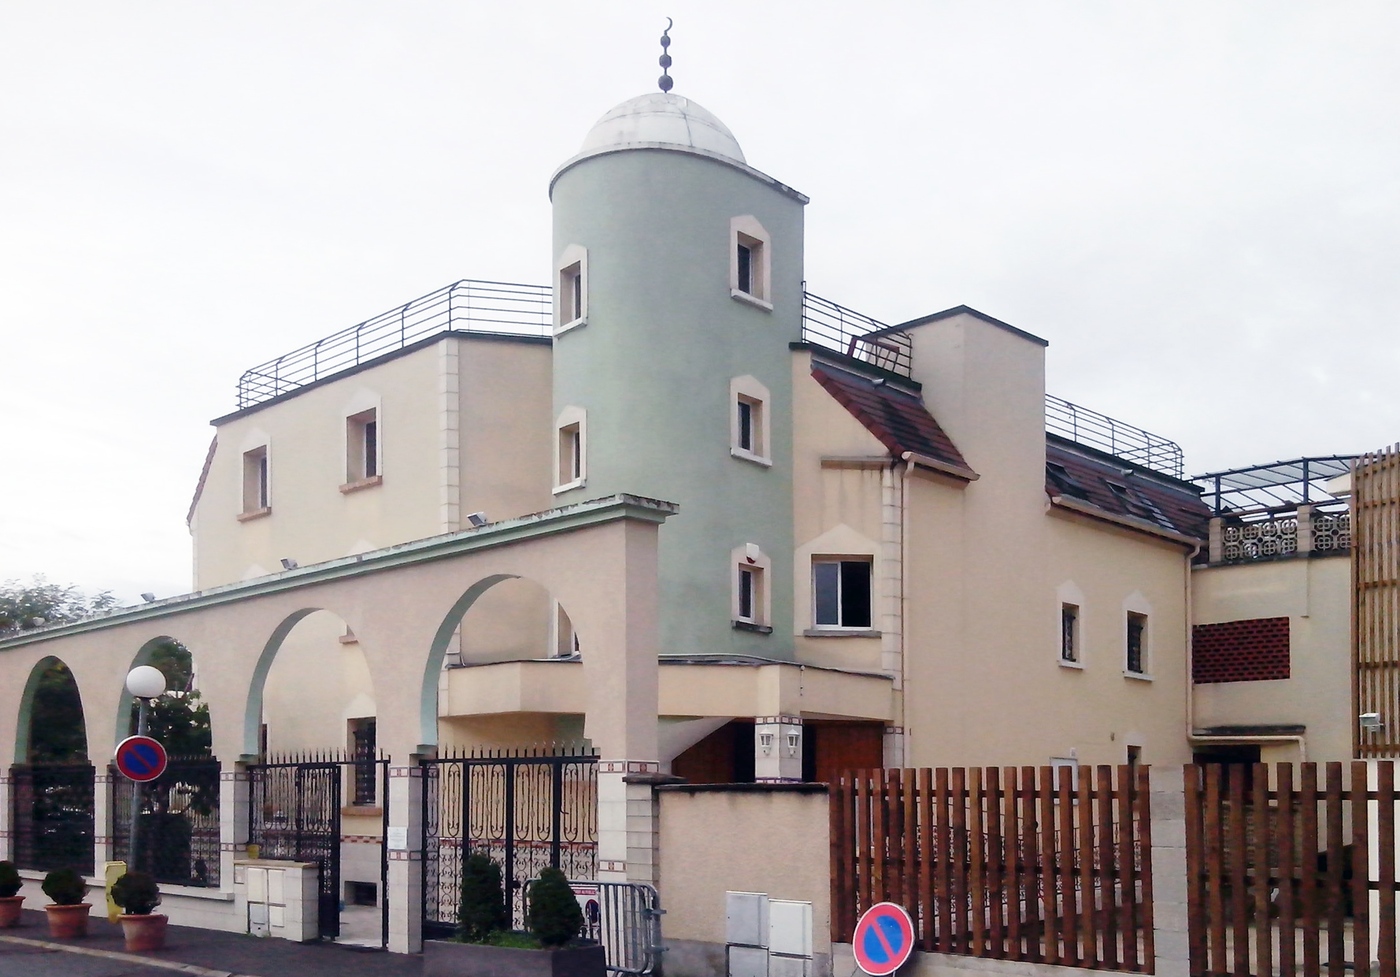 إعتداء عنصري على مسجد بالقرب من العاصمة الفرنسية